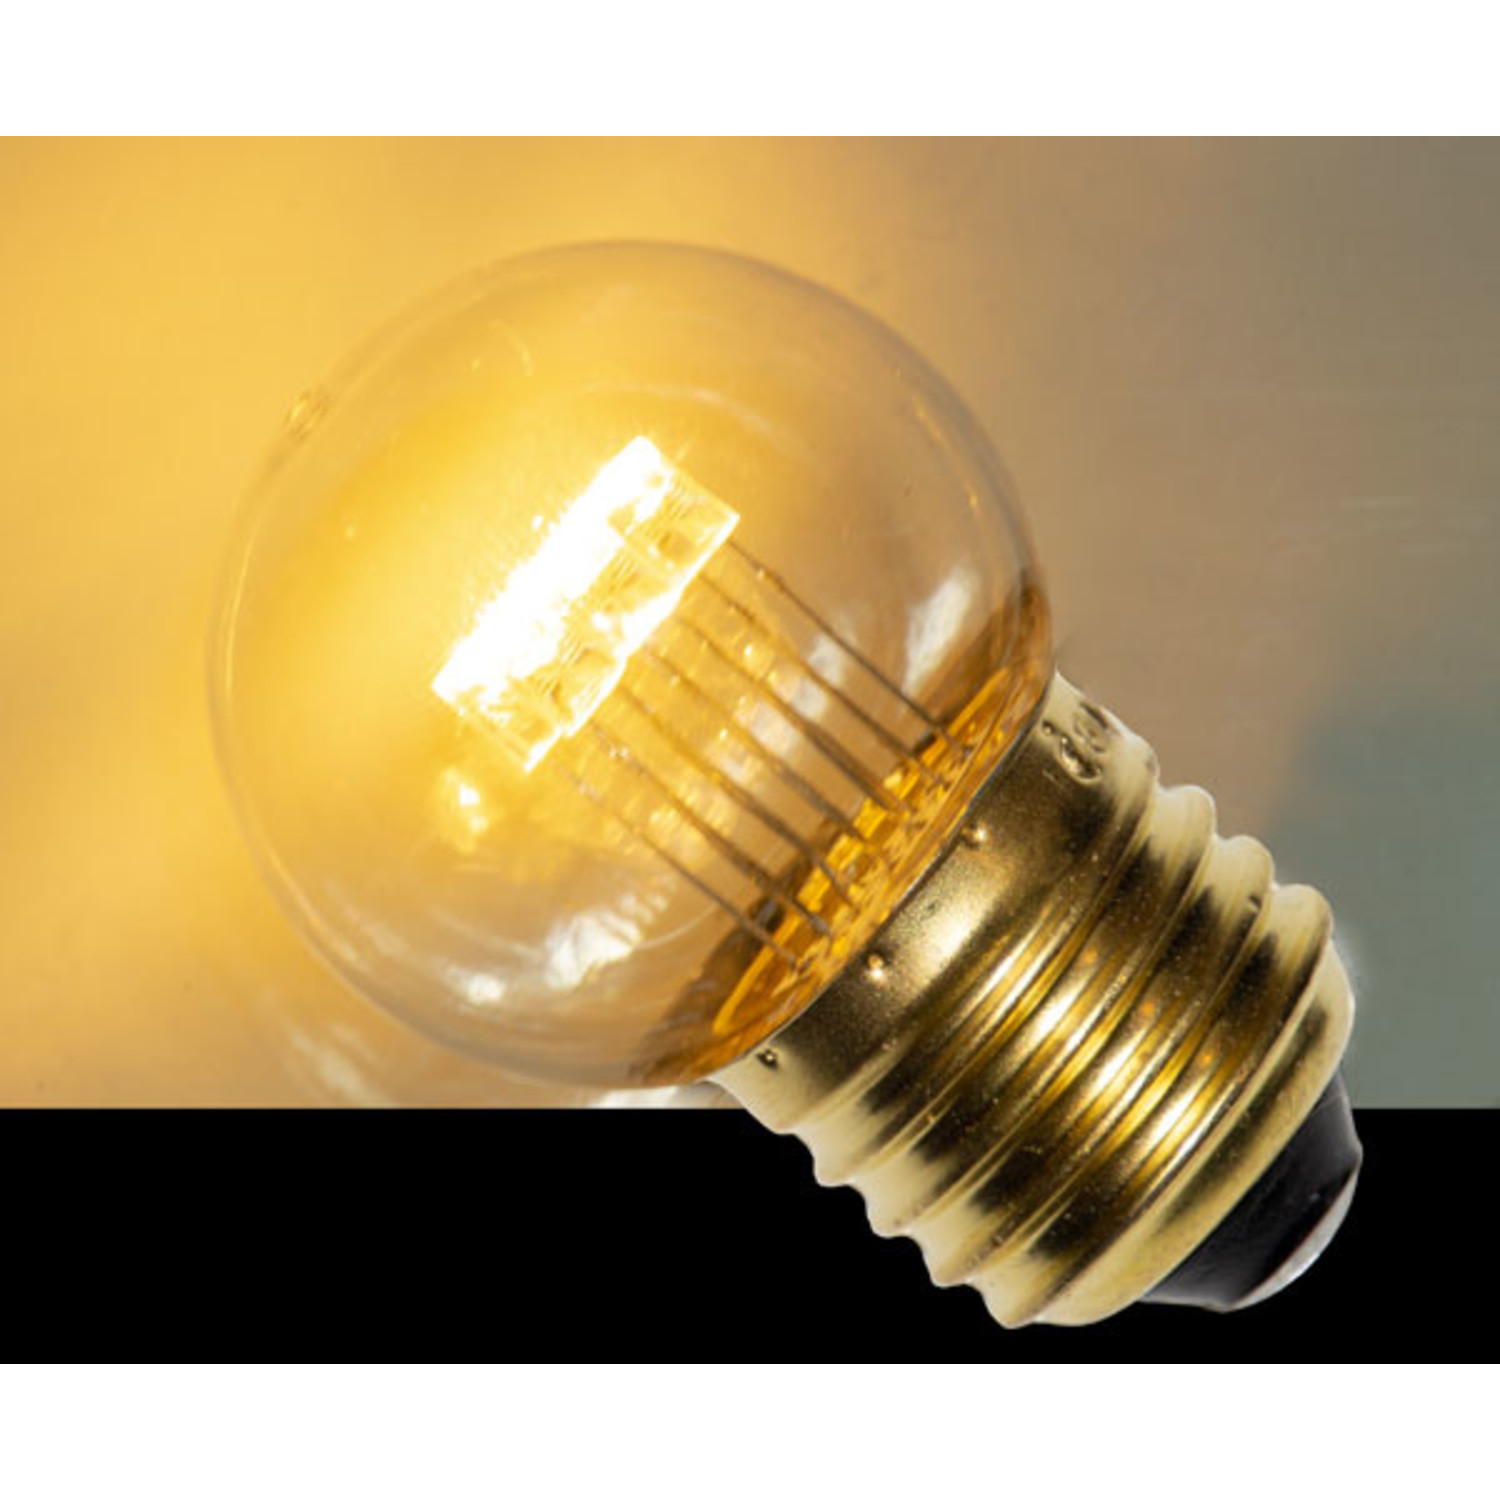 LED kogellamp - - transparante kap - E27 - Prikkabelwinkel